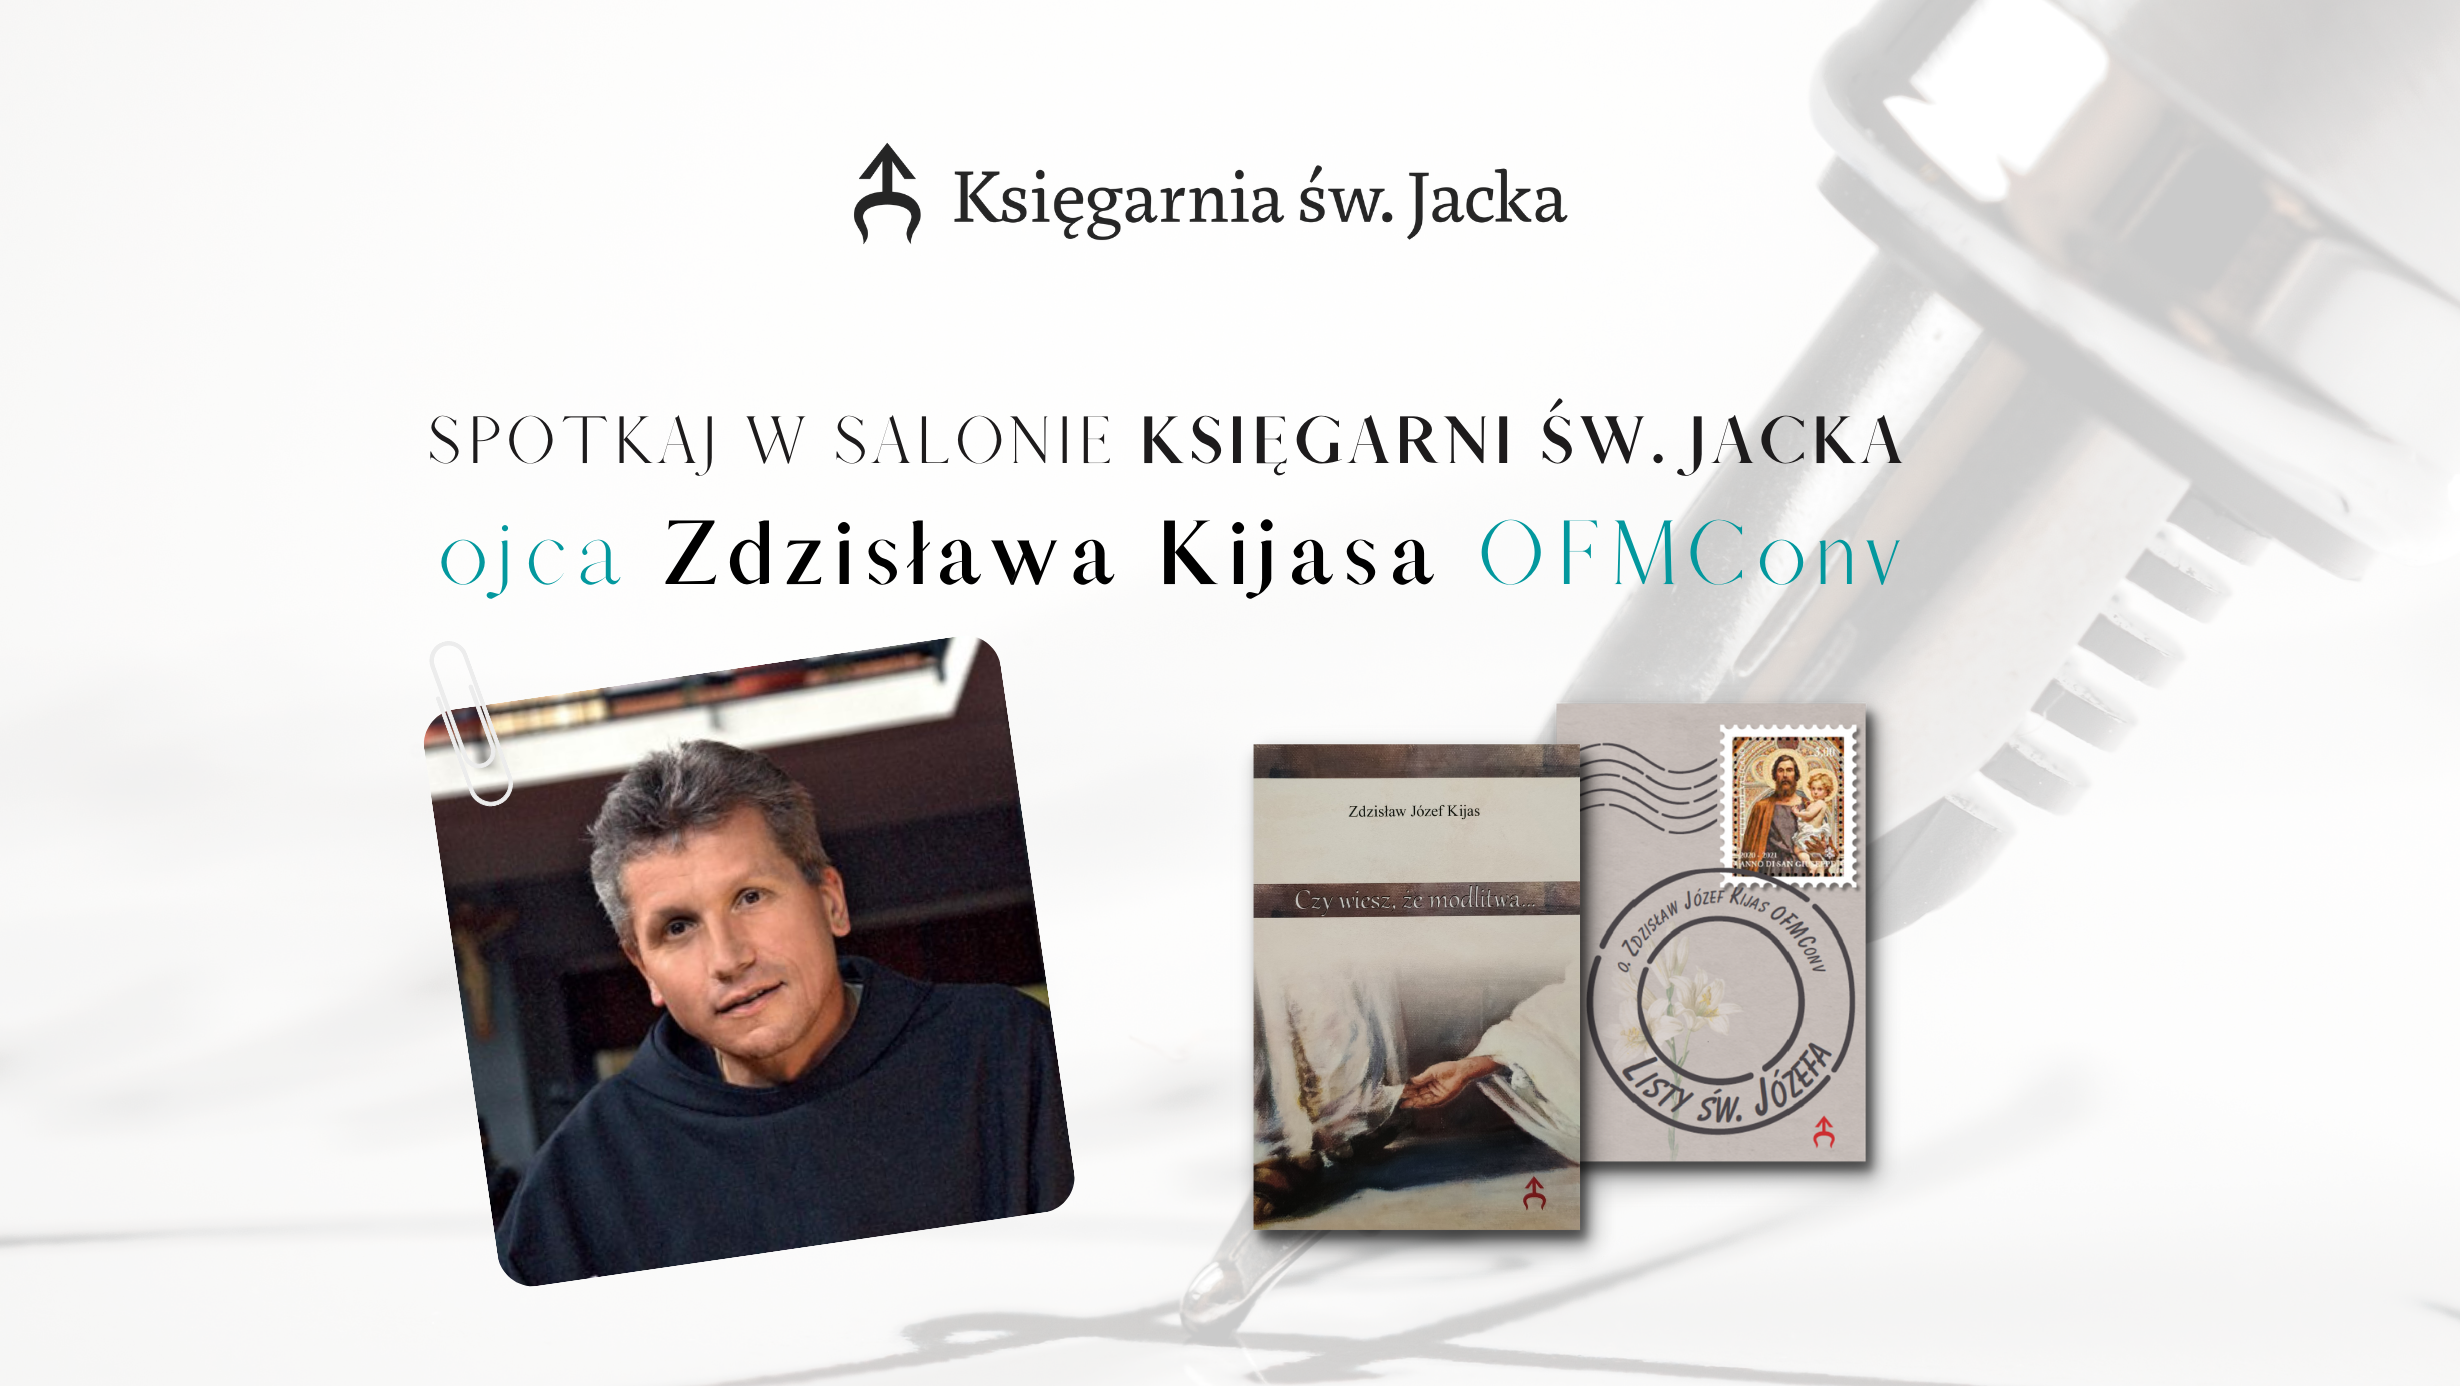 Spotkaj w naszej księgarni o. Zdzisława Kijasa